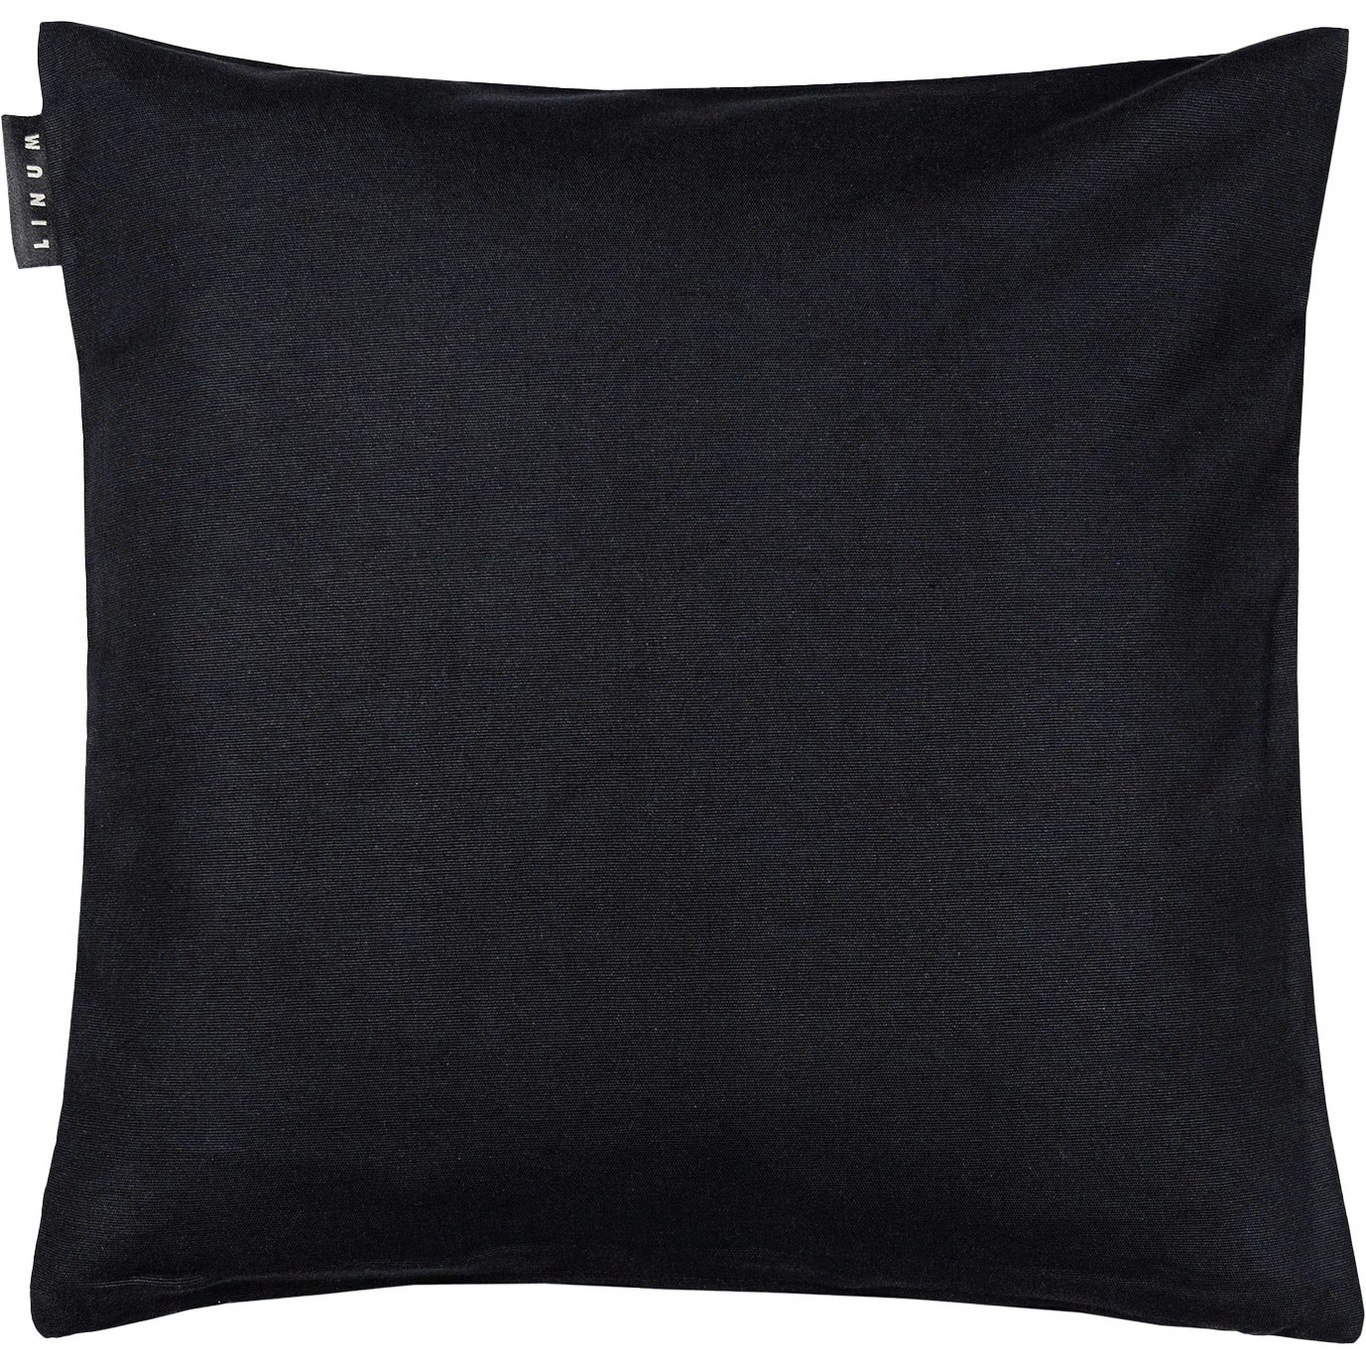 Annabelle Cushion Cover 40x40 cm, Black